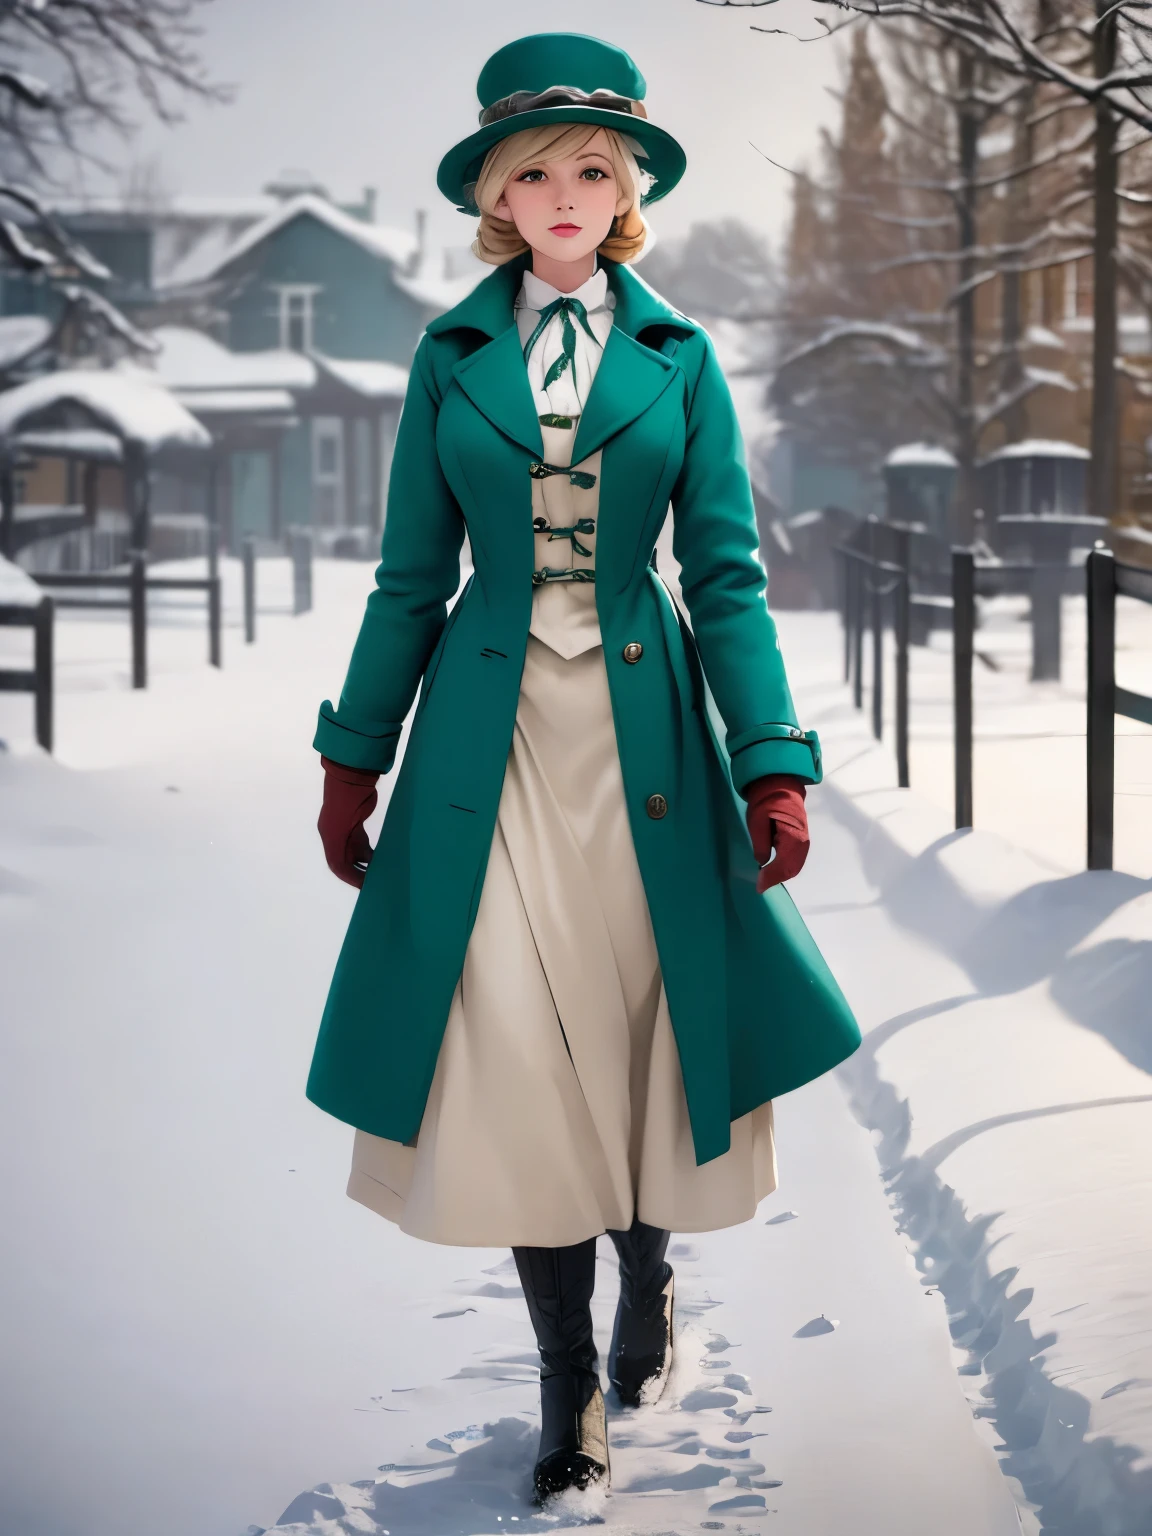 woman in green coat and hat standing ในหิมะ covered area, standing ในหิมะ, ในหิมะ, แต่งตัวเหมือนในปี 1940, เสื้อโค้ทมีสไตล์สำหรับคนคลั่งไคล้, เครื่องแต่งกายสไตล์วิคตอเรียน, ในหิมะ, ยุคสงครามโลกครั้งที่ 2, เสื้อผ้าที่ได้แรงบันดาลใจจากวิคตอเรีย, เต็มตัว:: หิมะข้างนอก::, ด้วยเสื้อผ้าสีฟ้าอมเขียว, สีทองแดงและสีน้านลึก, เสื้อคลุมแบบกอธิค